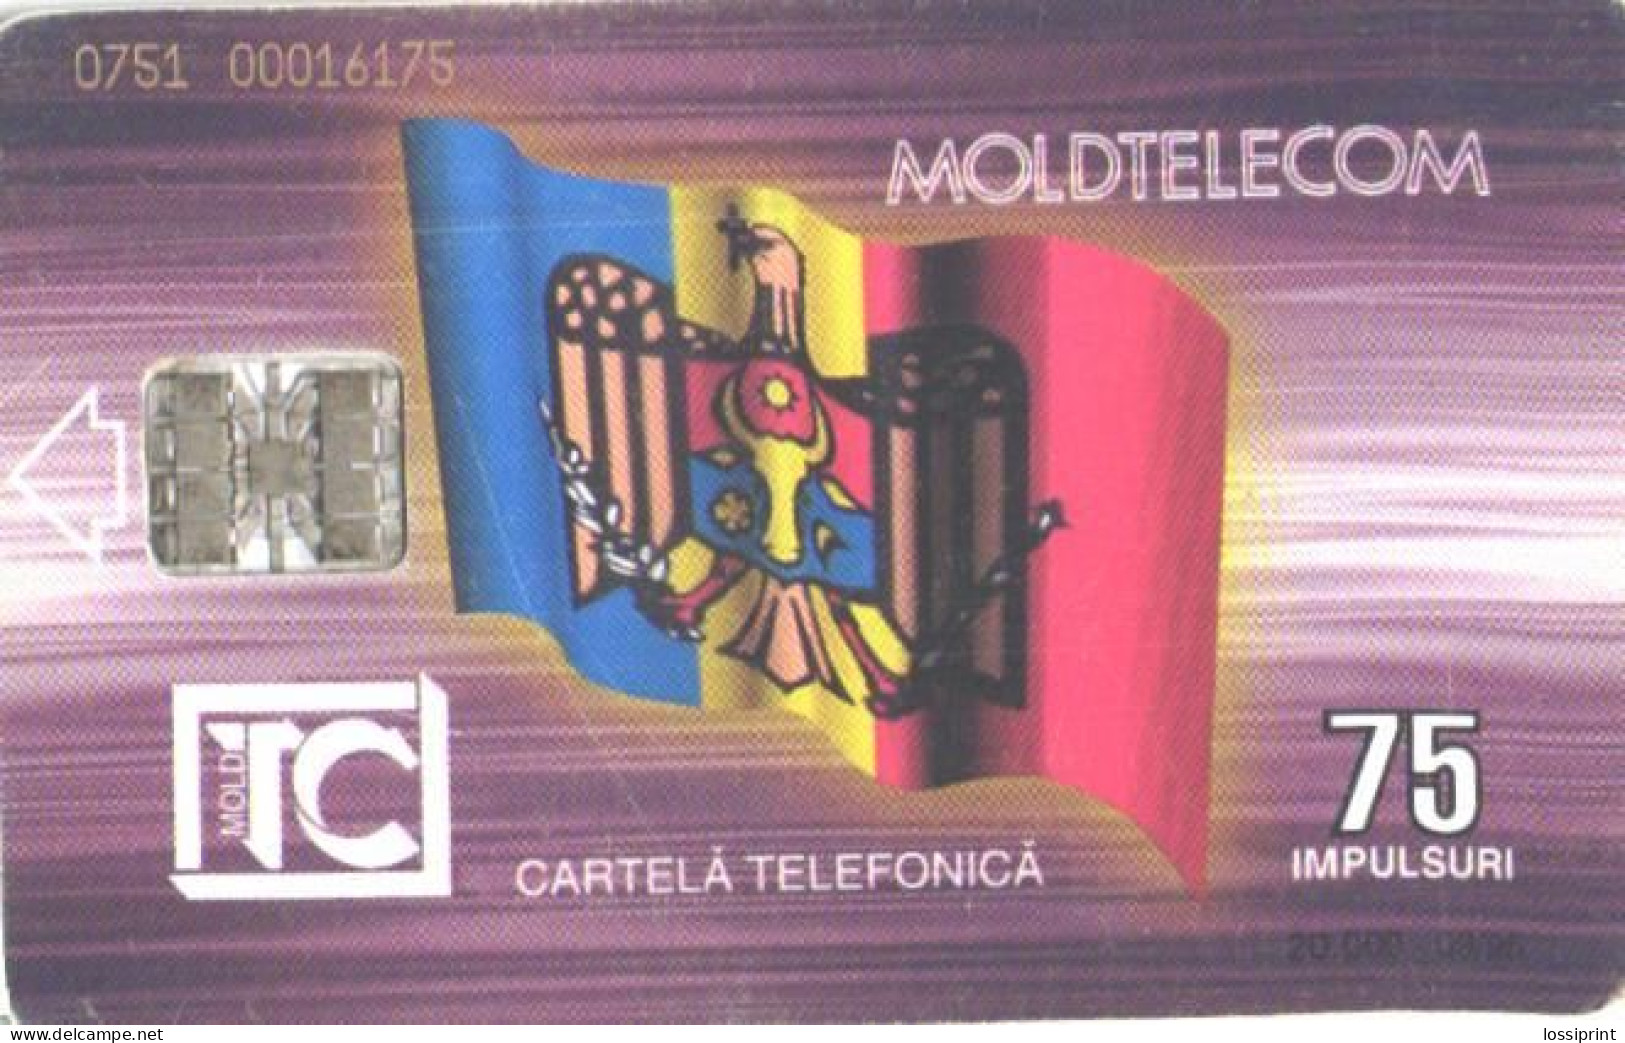 Moldova:Used Phonecard, Moldtelecom, 75 Impulses, Building, 1995 - Moldavie